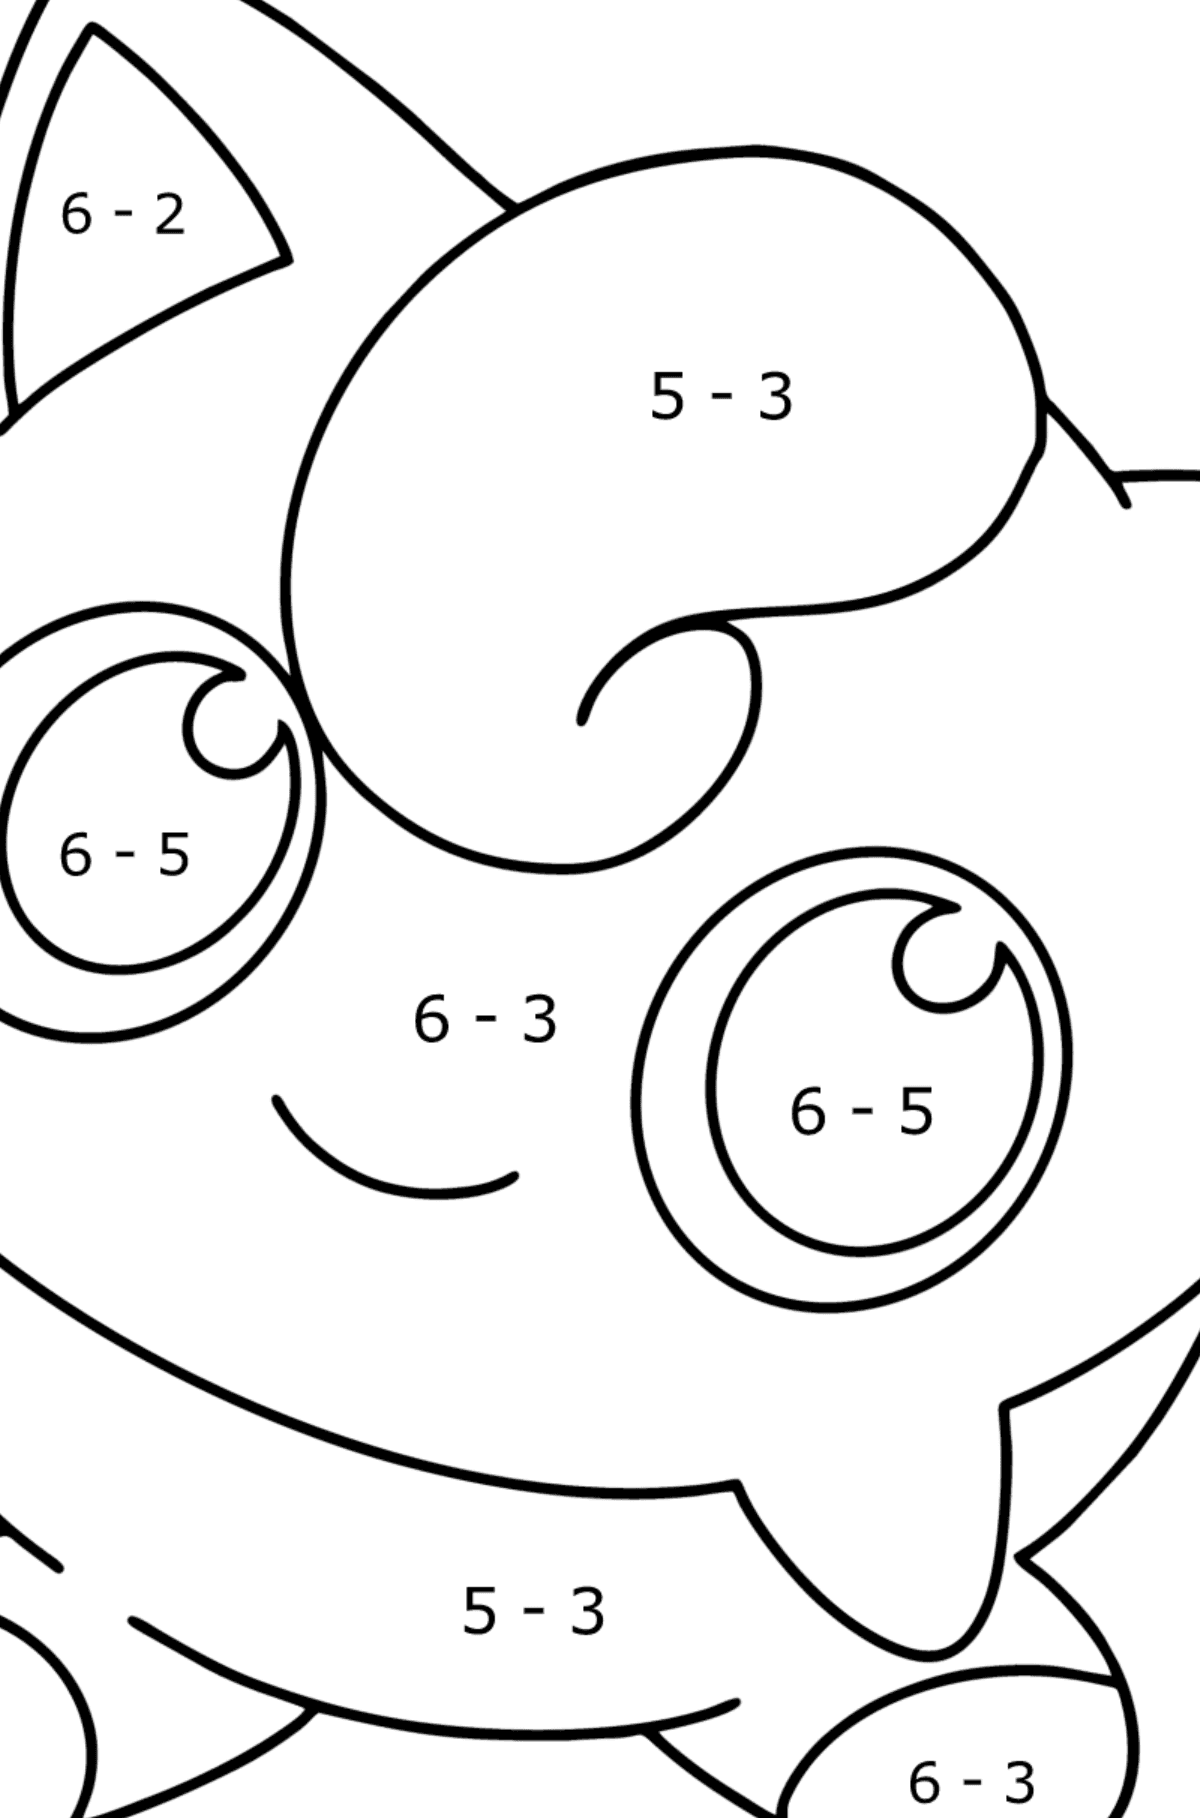 Desenho de Pokémon Go Jigglypuff para colorir - Colorindo com Matemática - Subtração para Crianças